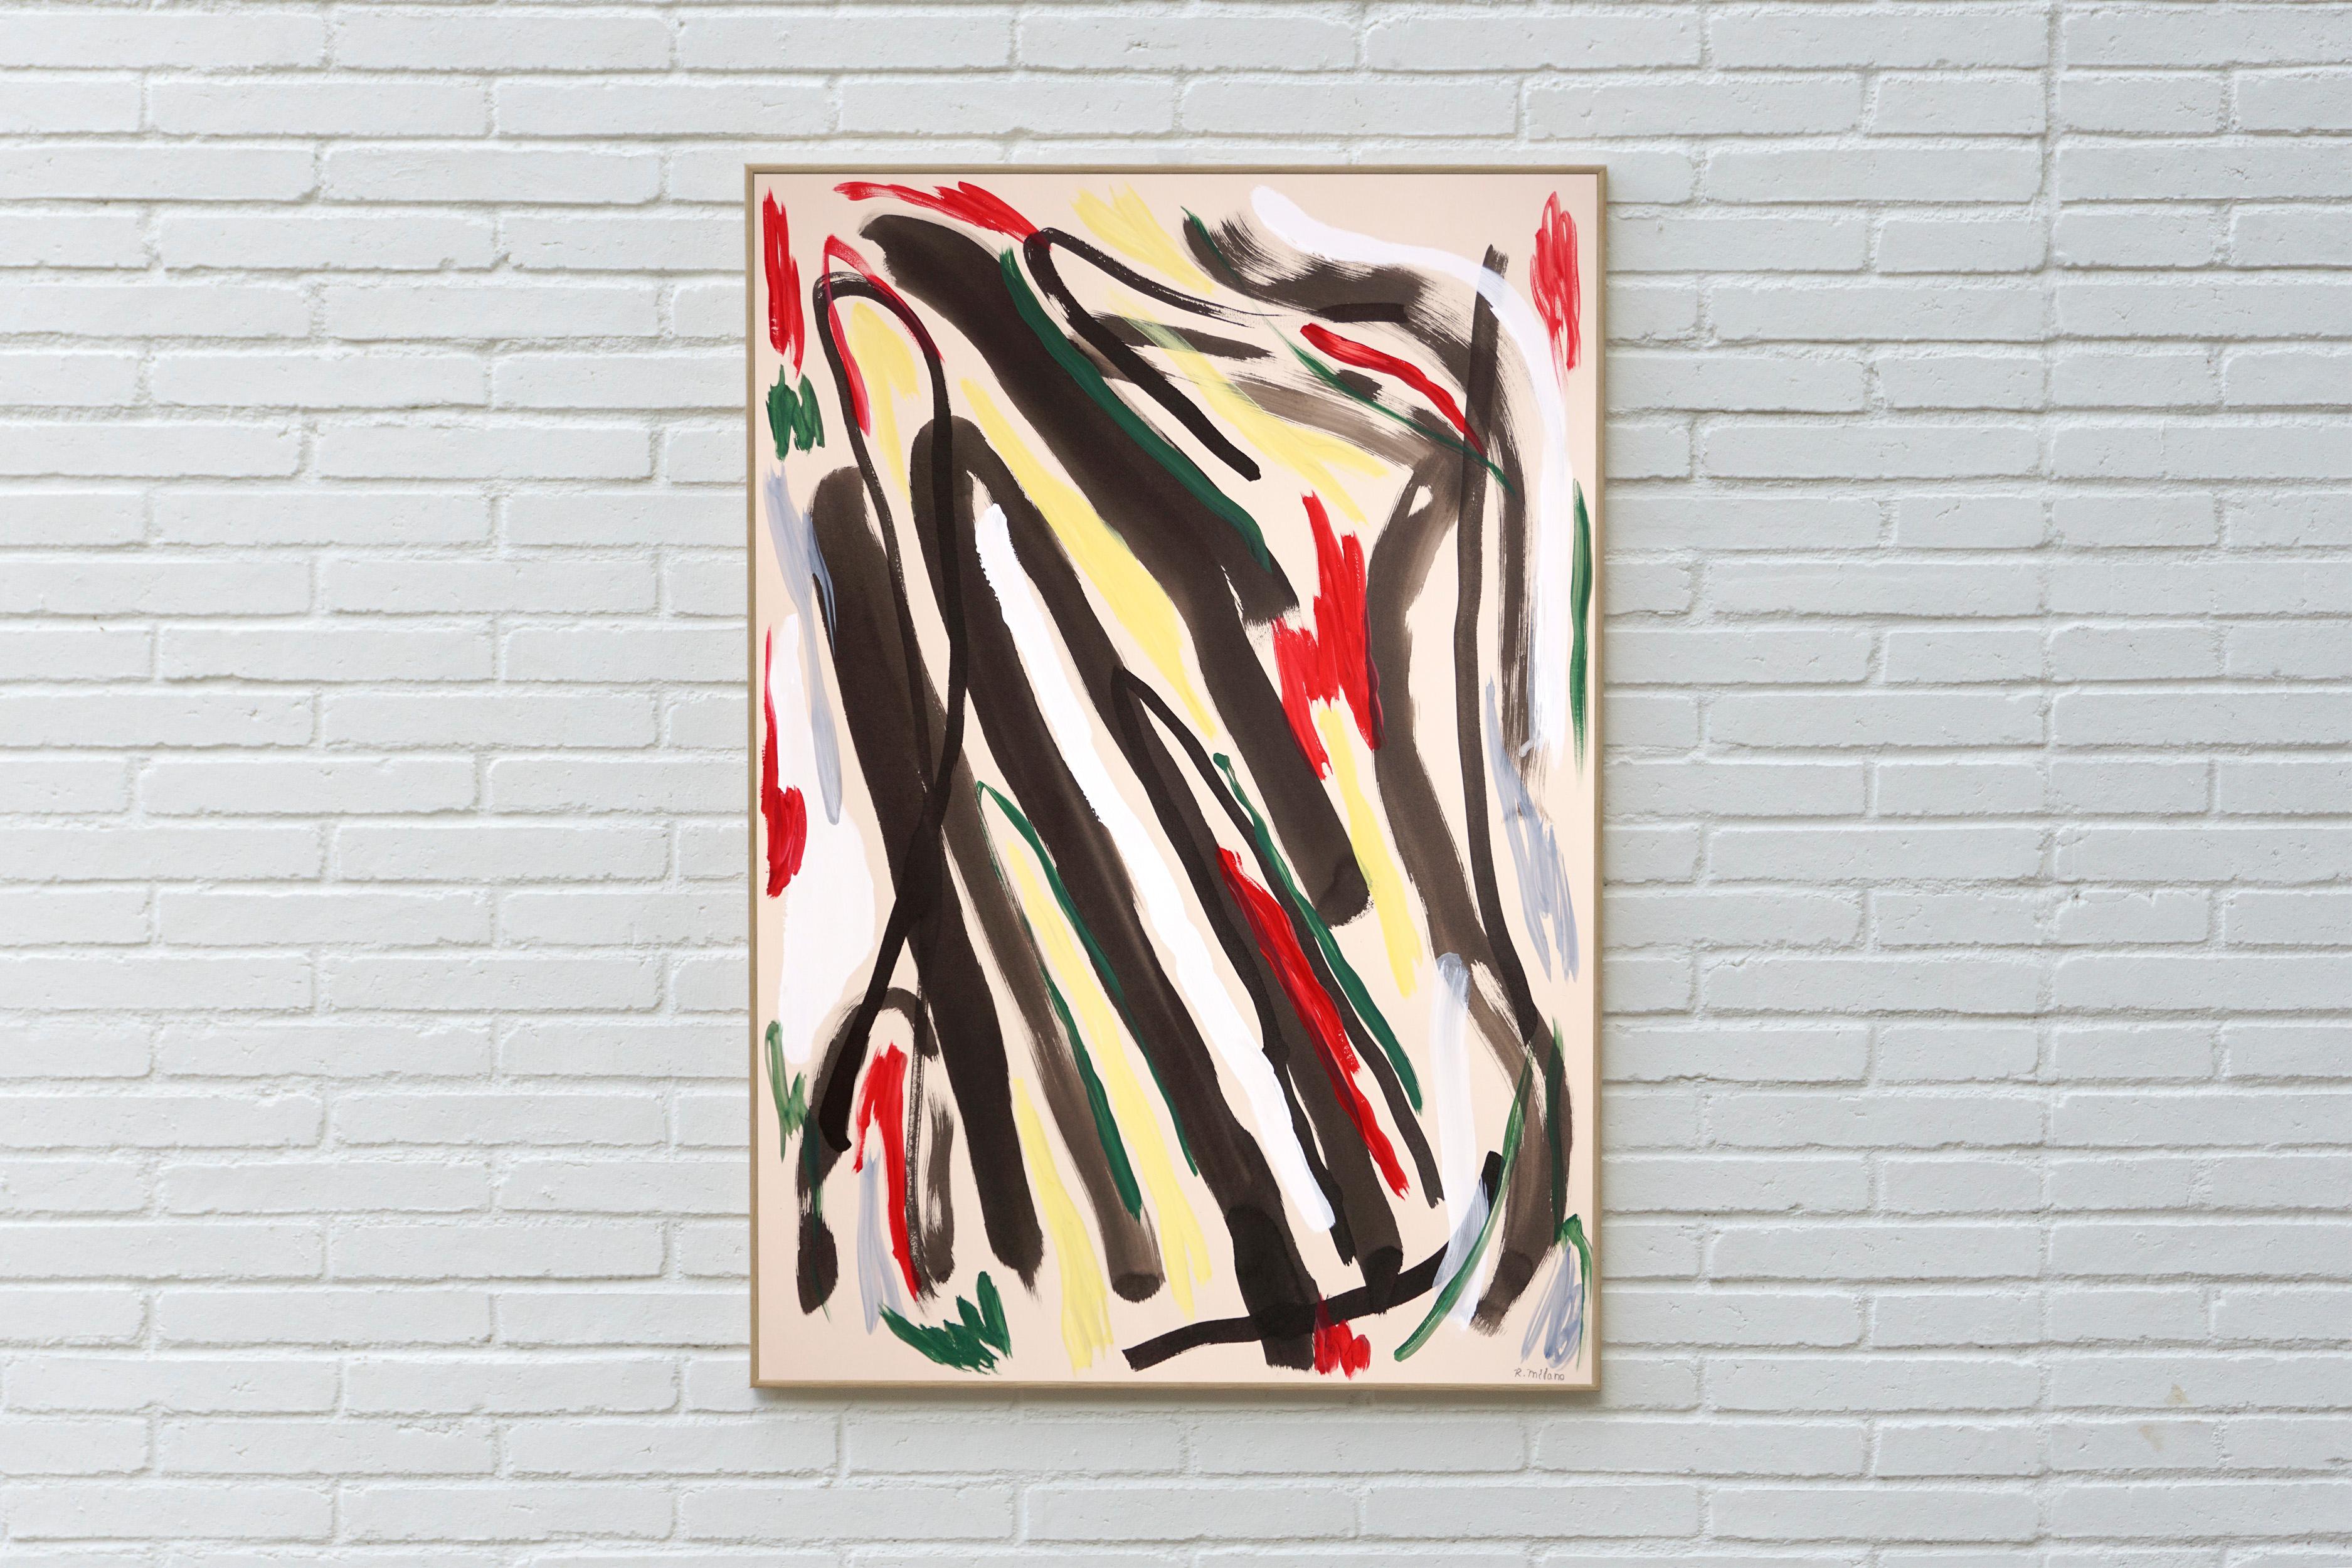 The Bullfight, peinture expressionniste abstraite en rouge et jaune, gestes noirs - Painting de Romina Milano